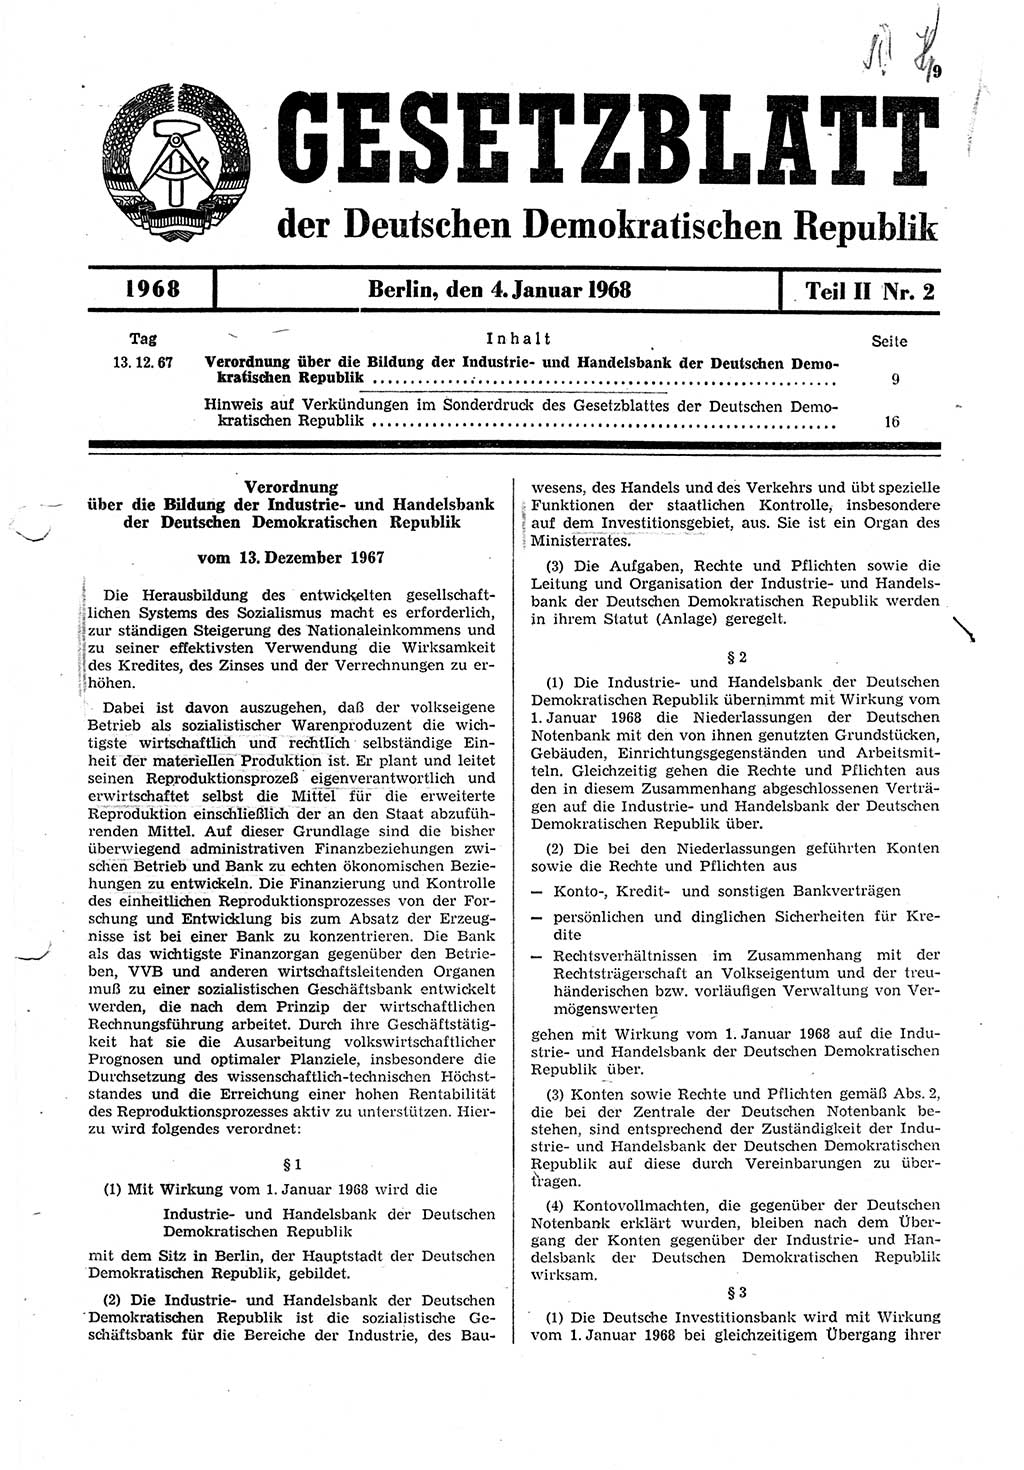 Gesetzblatt (GBl.) der Deutschen Demokratischen Republik (DDR) Teil ⅠⅠ 1968, Seite 9 (GBl. DDR ⅠⅠ 1968, S. 9)